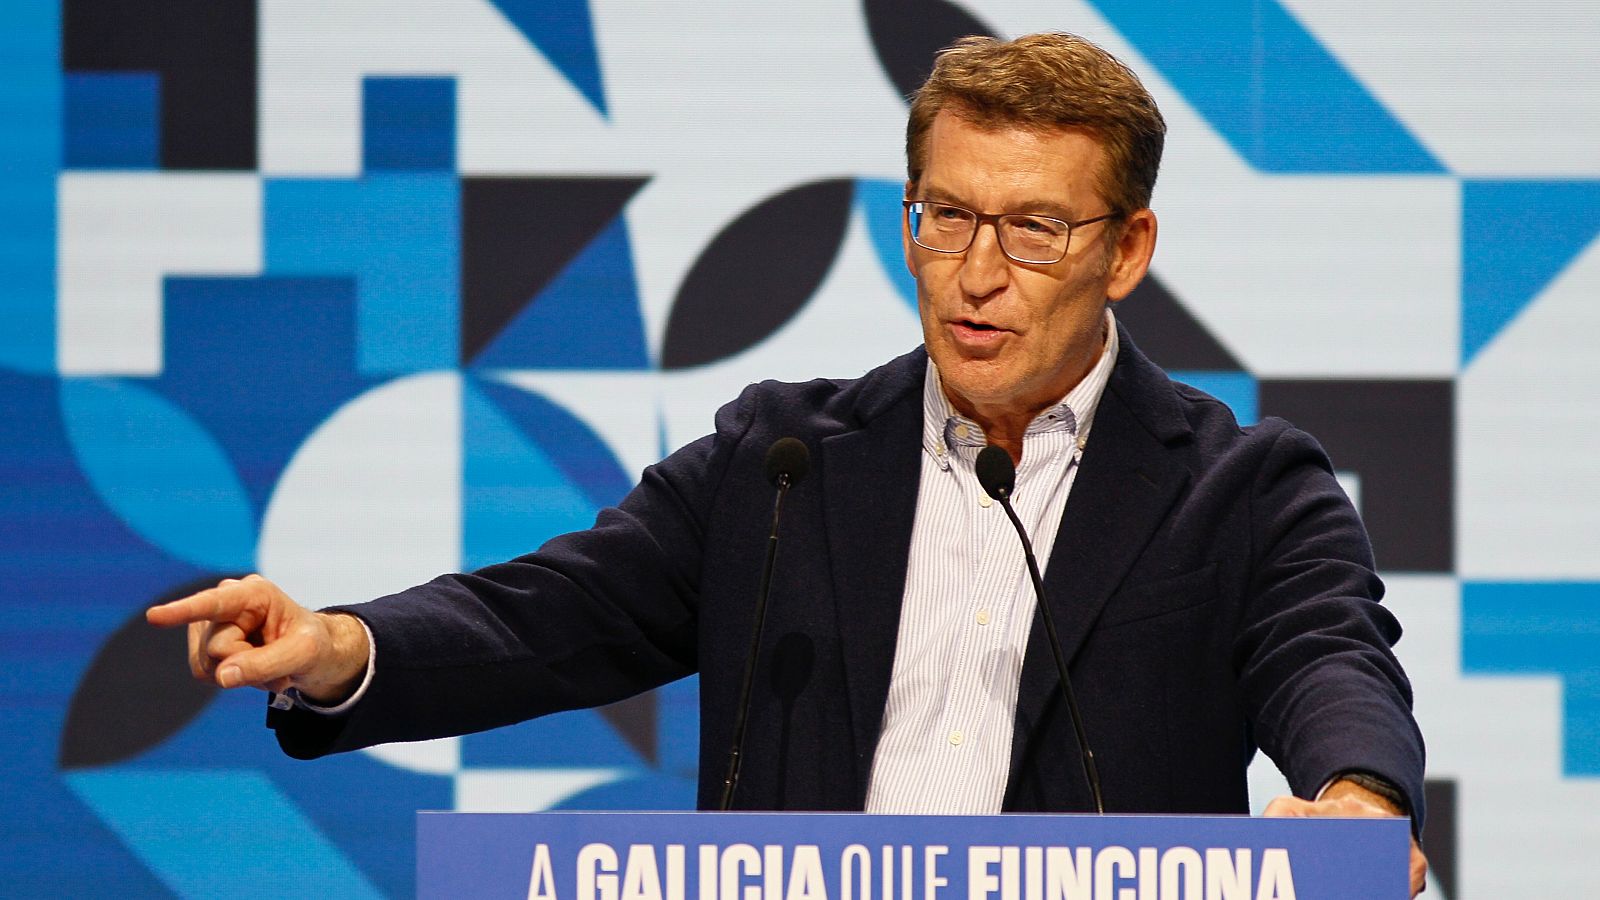 El PP saca pecho de sus resultados en Galicia y cree que Feijóo sale reforzado ante Sánchez